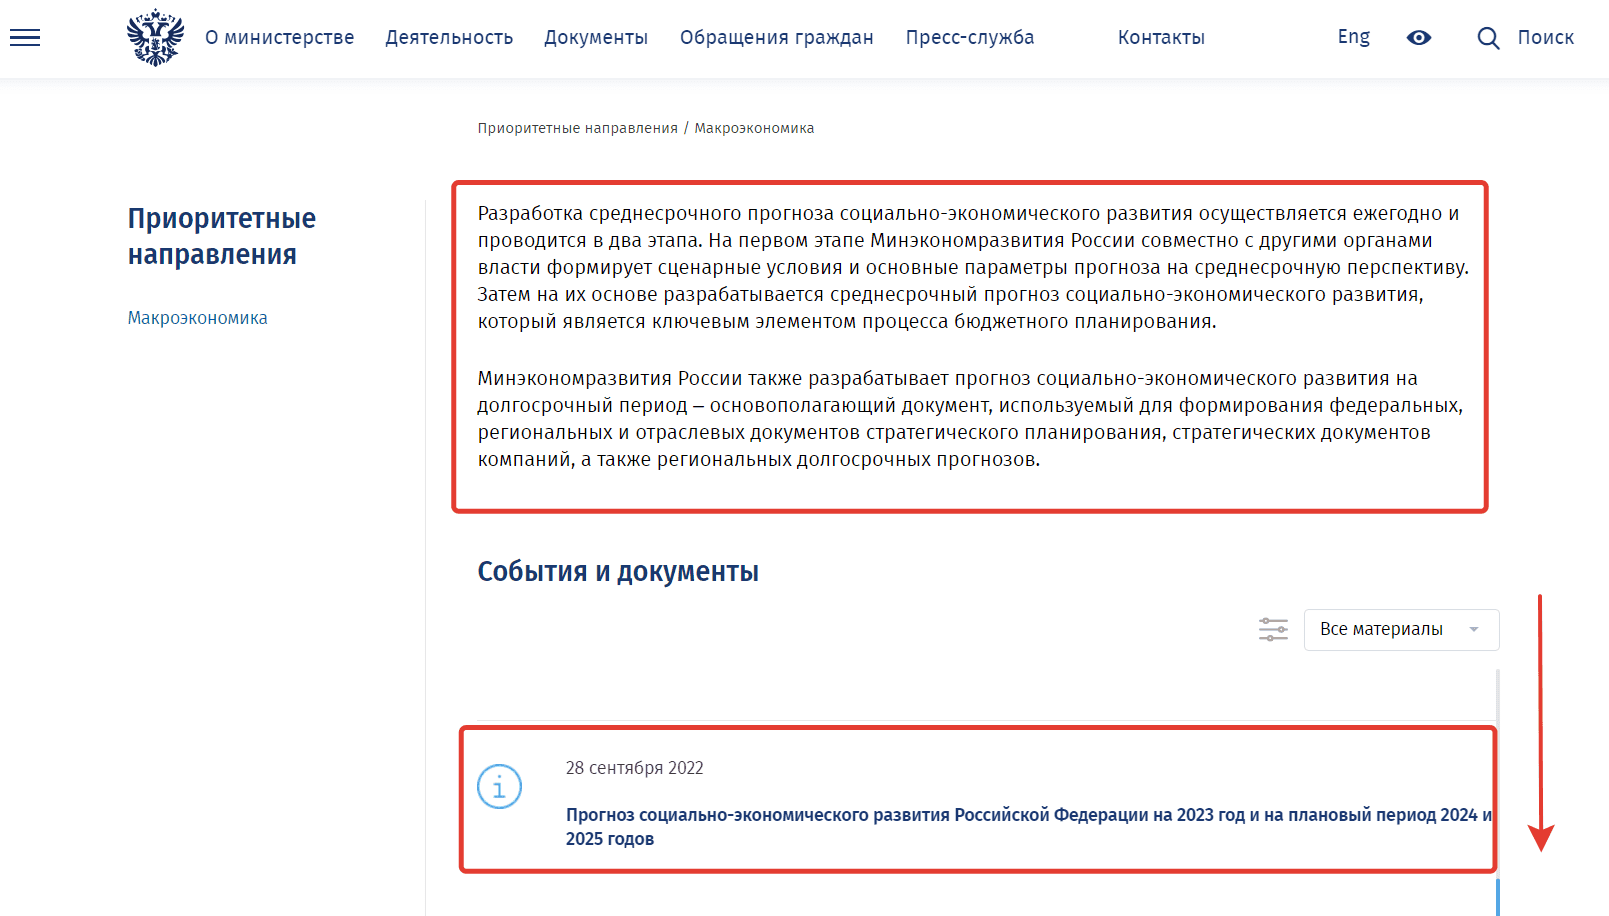 Поиск индексов-дефляторов на сайте Минэкономразвития России алгоритм шаг 5